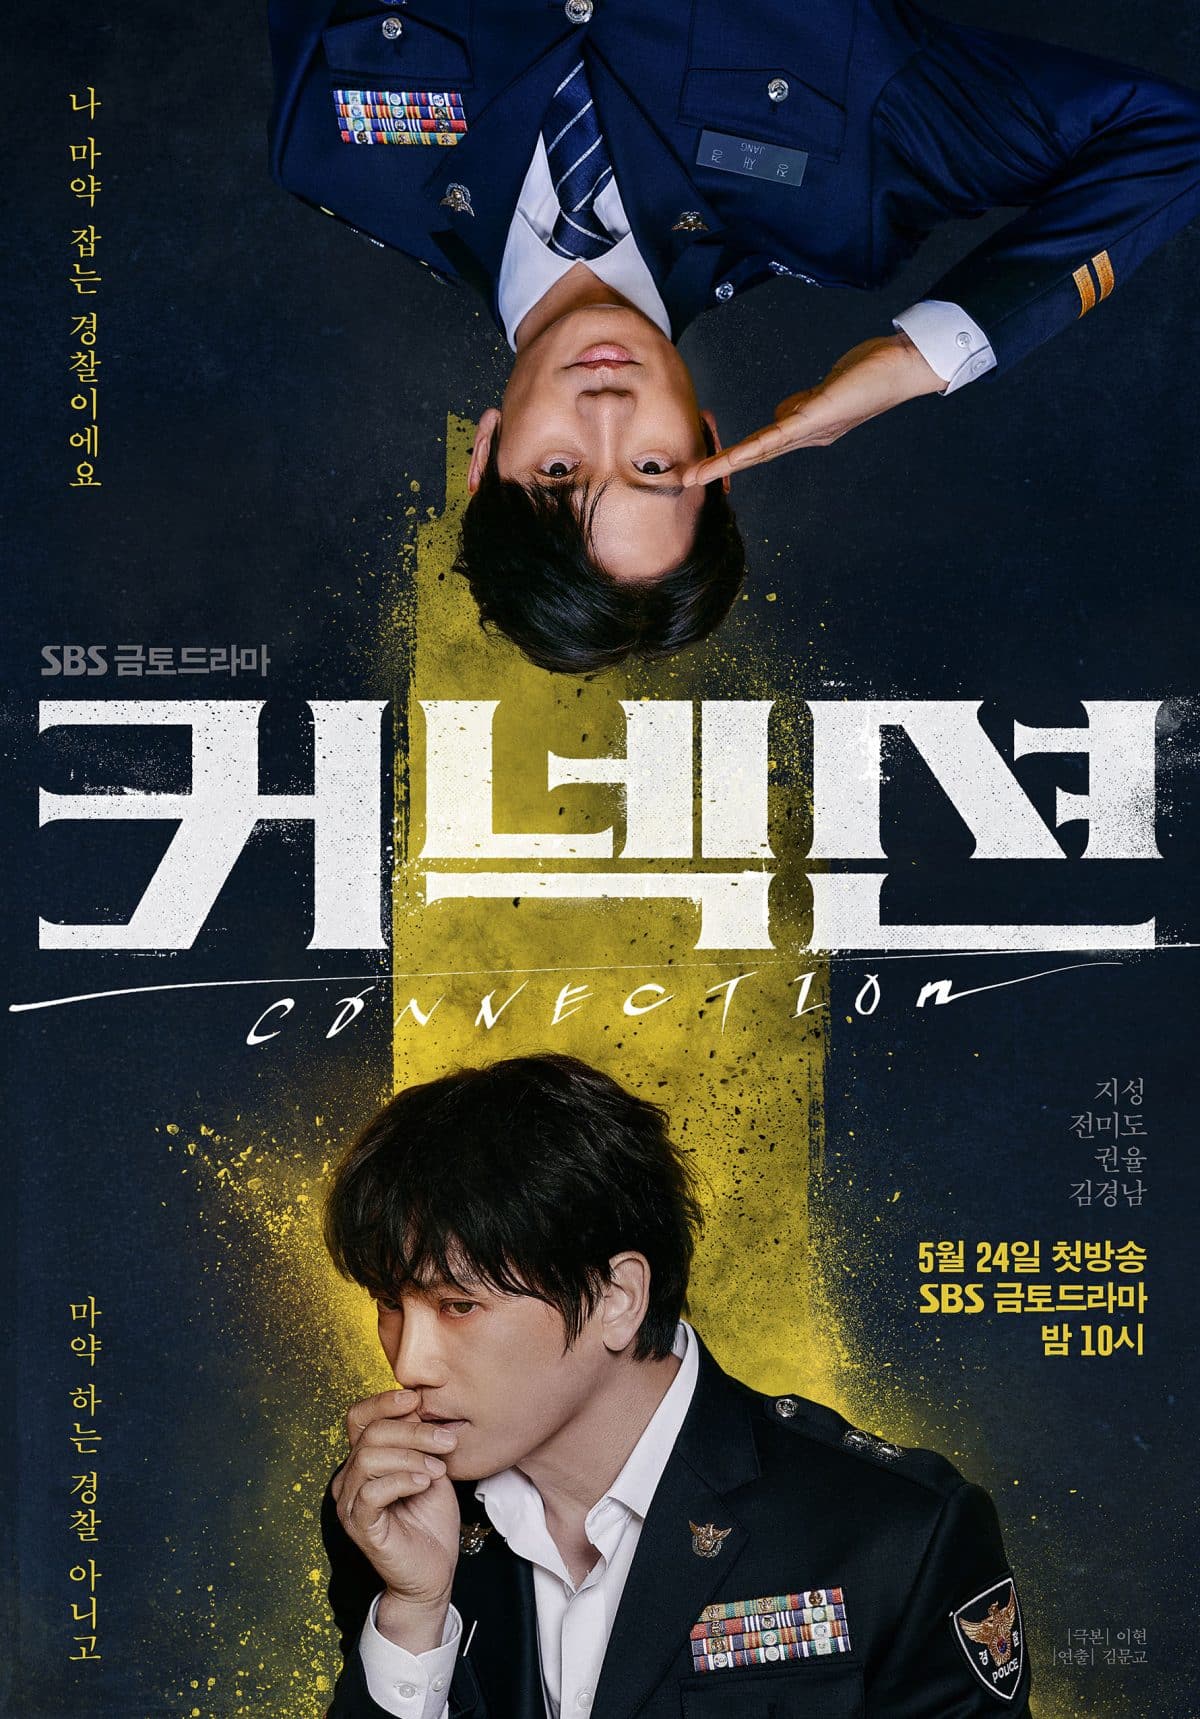 Джи Сон и Чон Ми До на загадочных постерах дорамы "Связь"